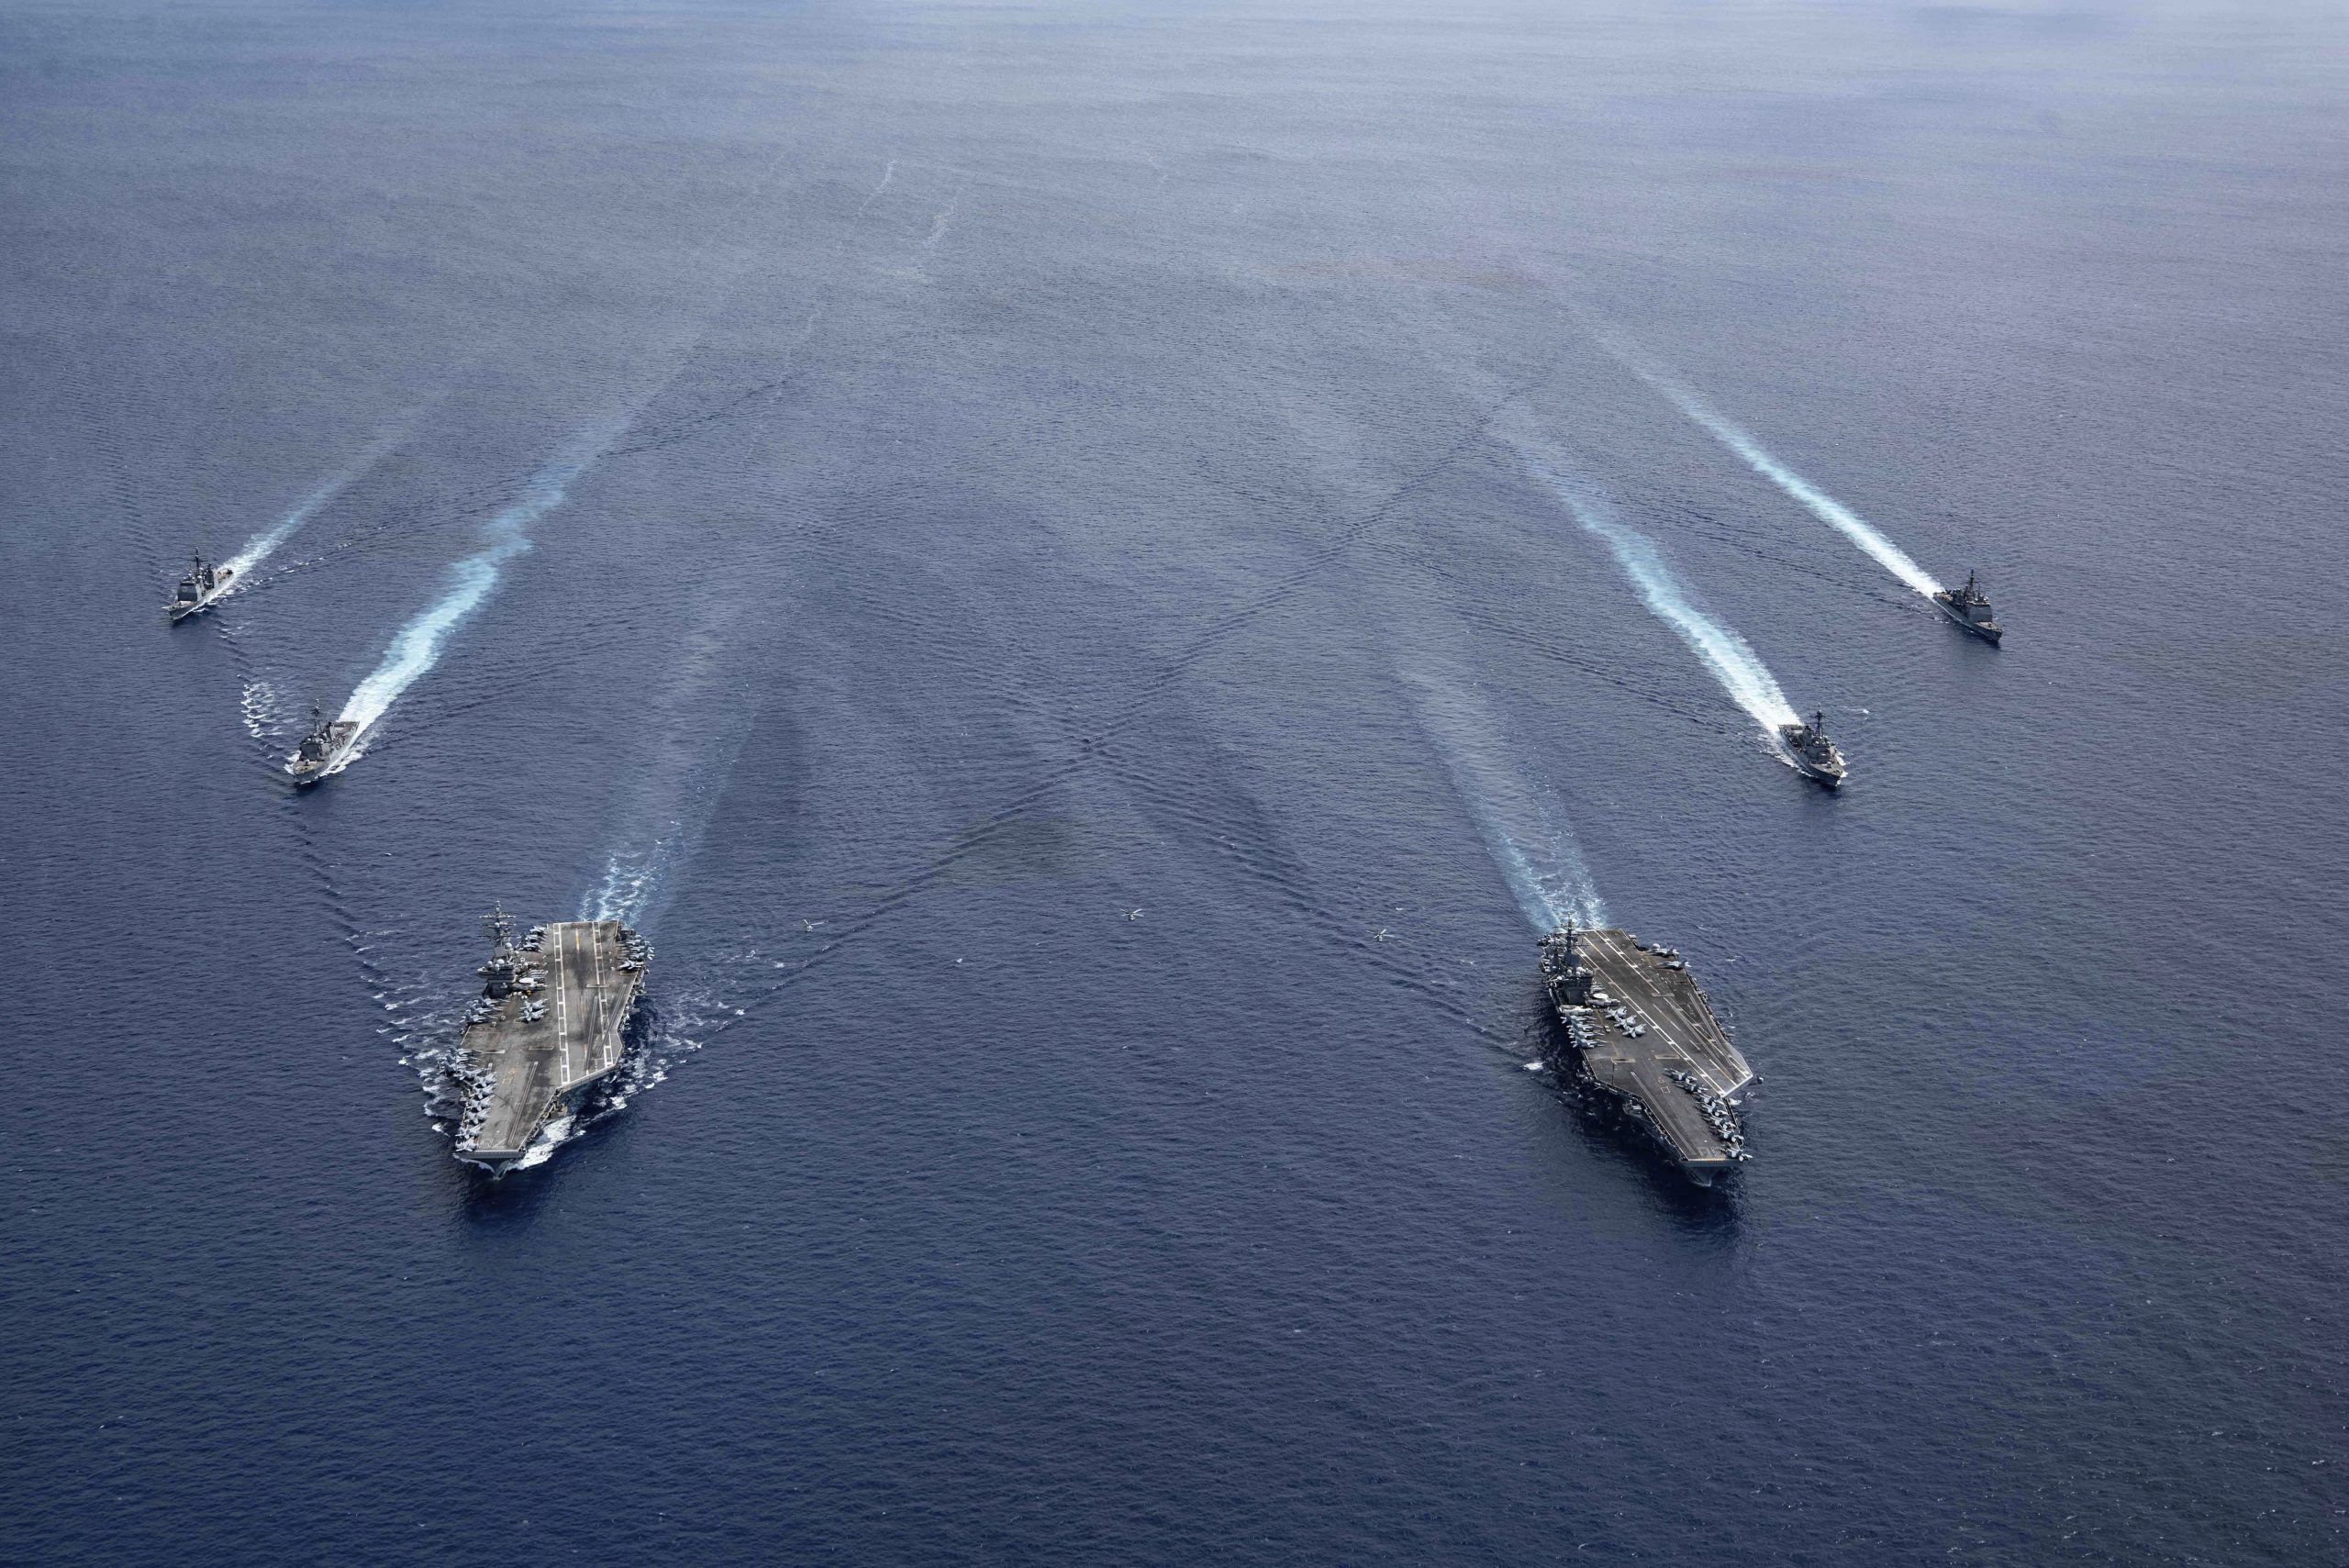 Esercitazioni Marina degli Stati Uniti nel Mar Cinese Meridionale (La Presse)